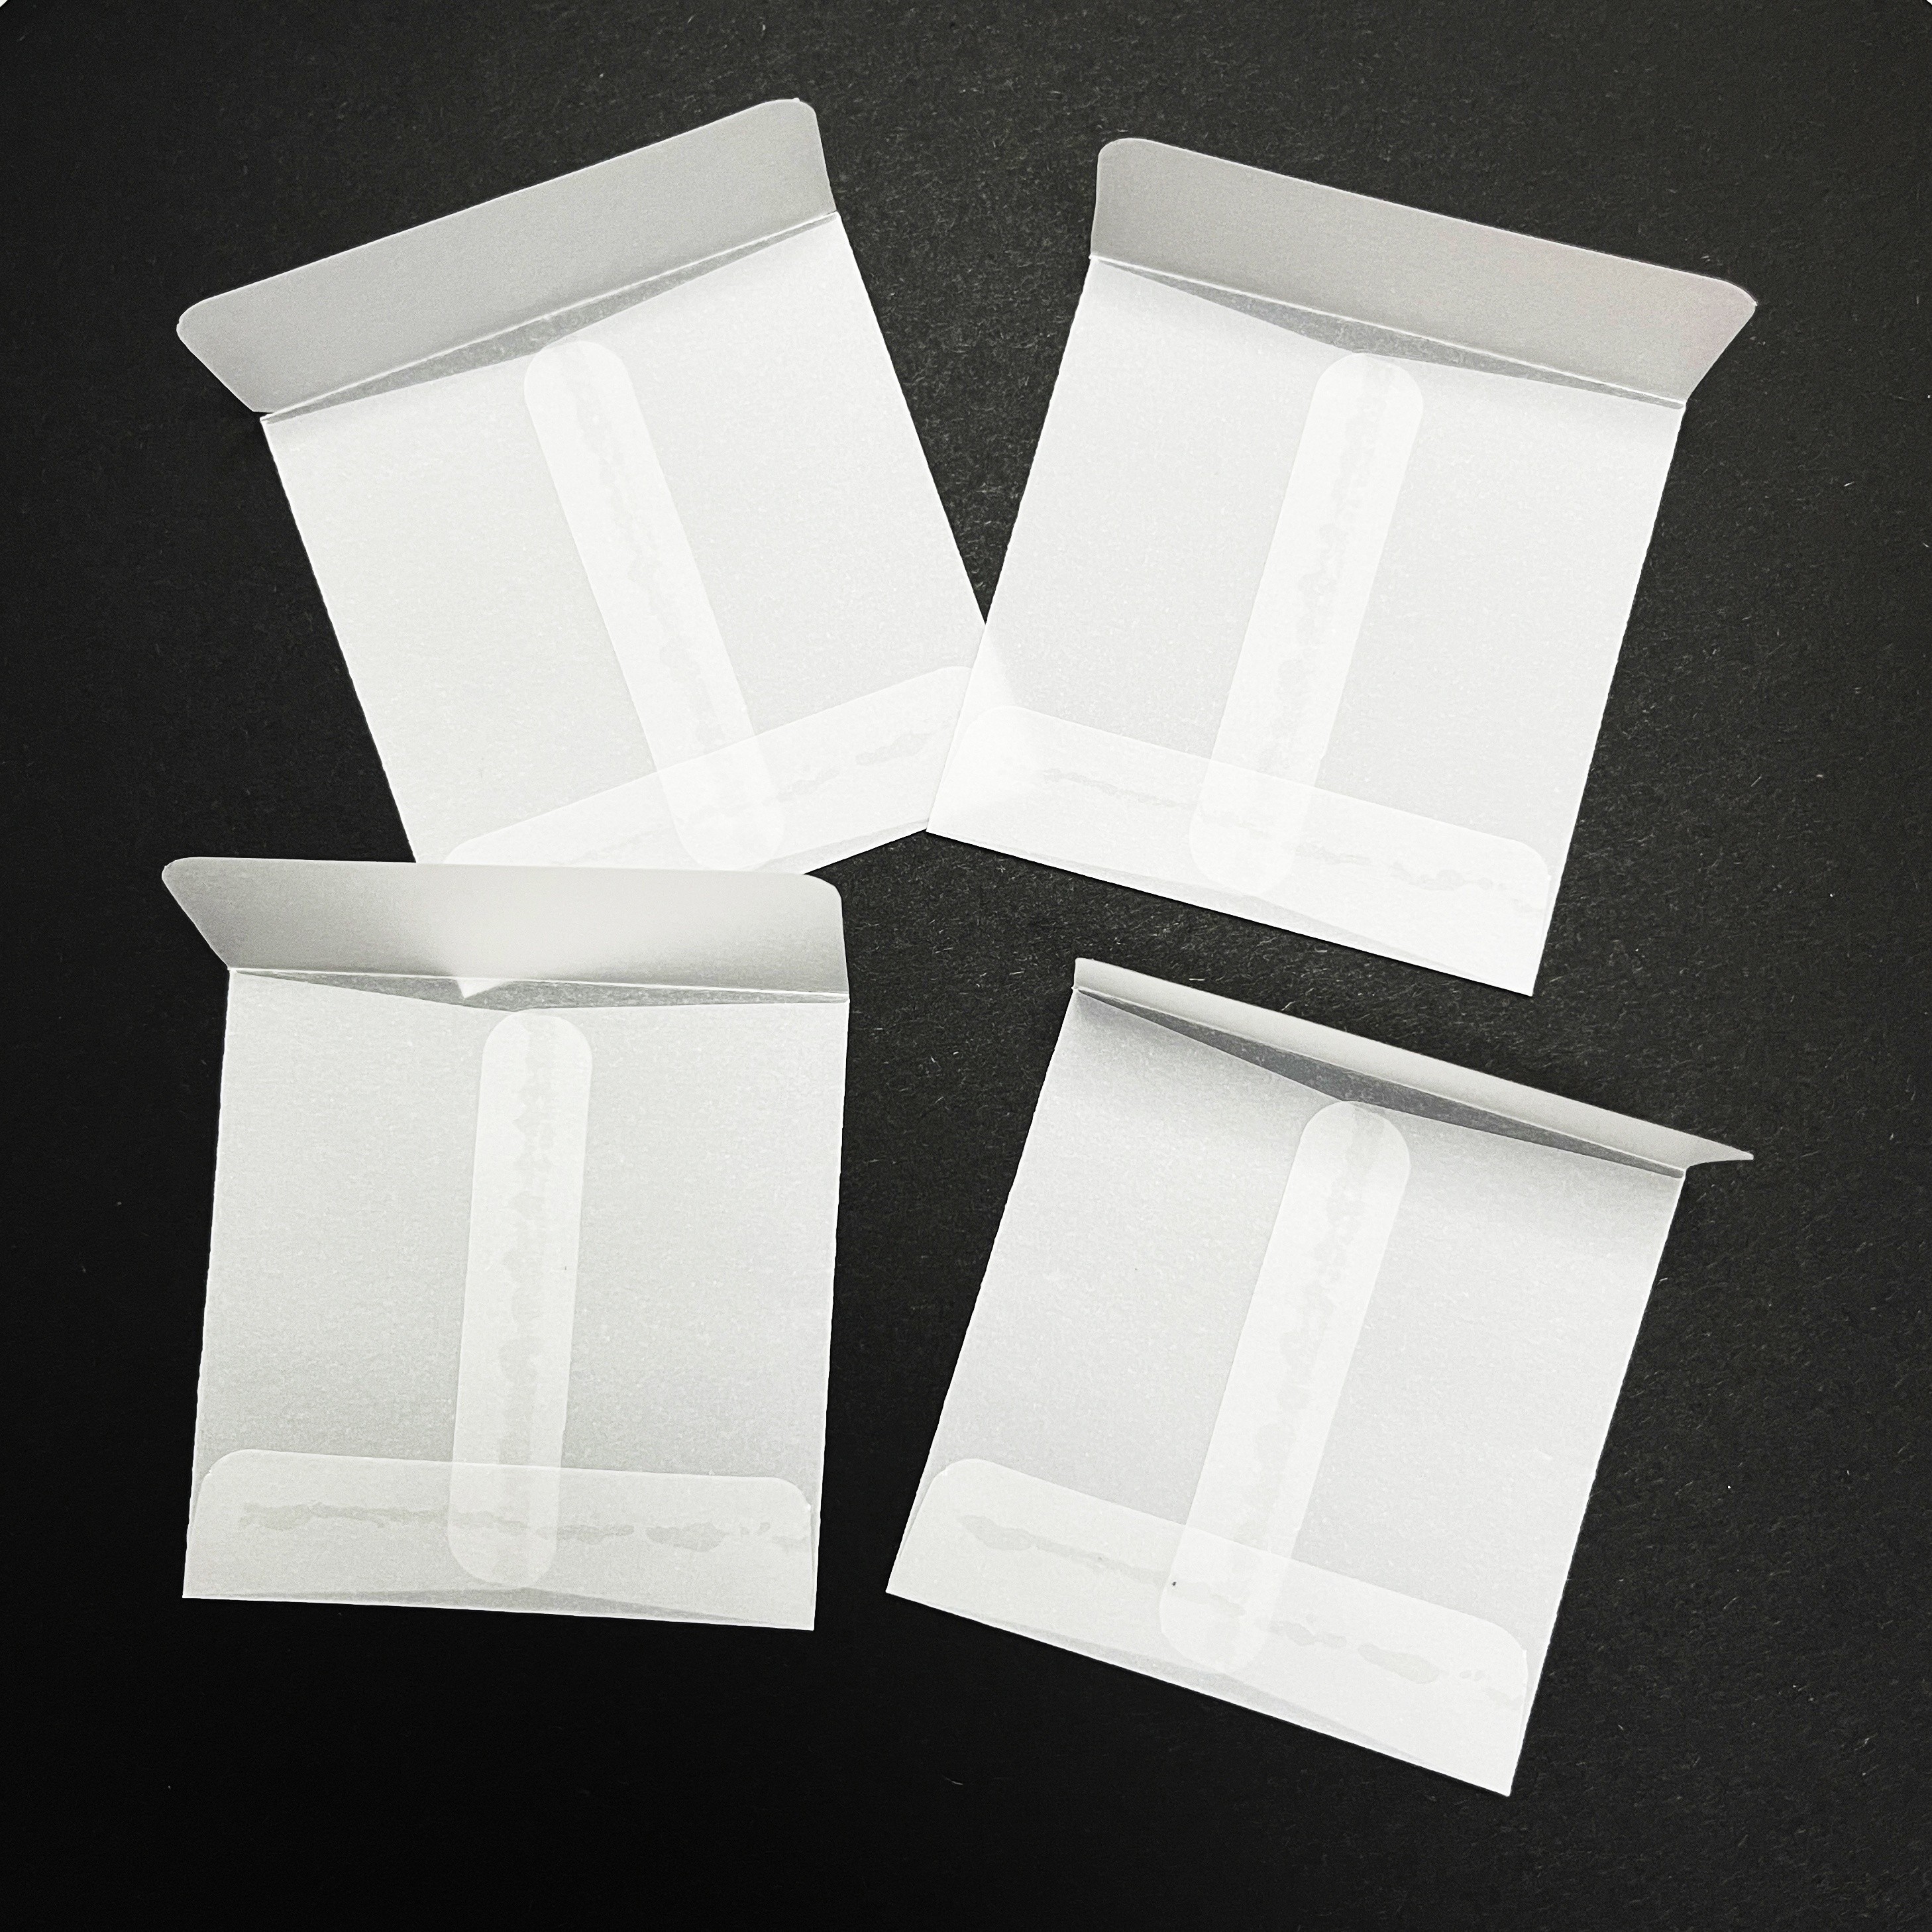 Lot de 100 pochettes en cellophane pour cartes - Disponibles dans toutes  les tailles A4, A5, A3 - Pochettes transparentes auto-adhésives en  plastique